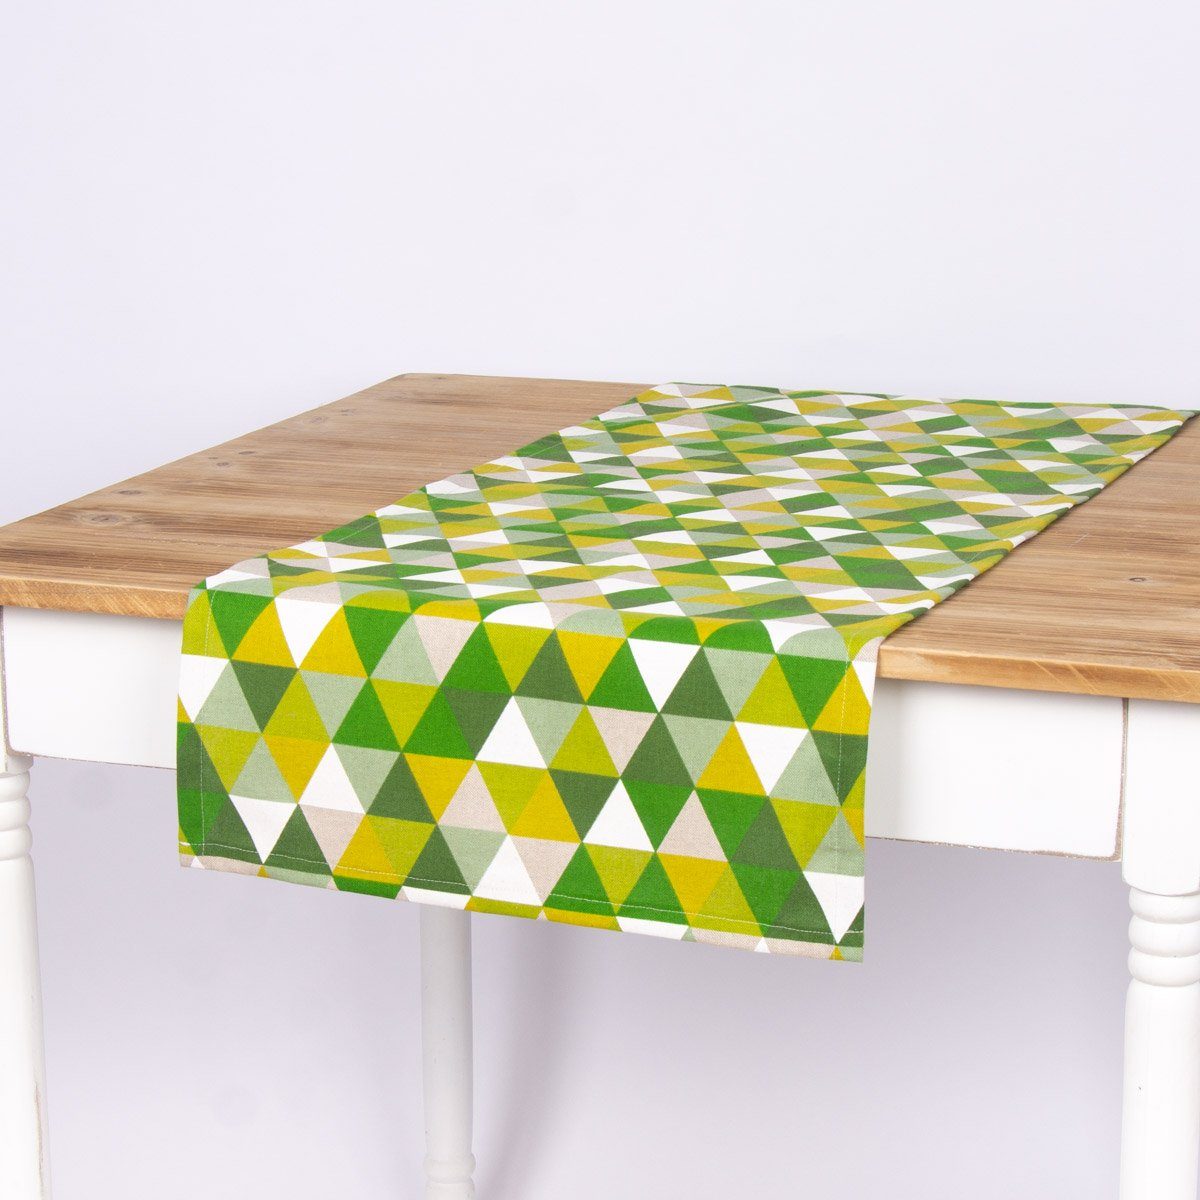 SCHÖNER LEBEN. Tischläufer SCHÖNER LEBEN. Tischläufer Dreiecke grün Töne 40x160cm, handmade | Tischläufer